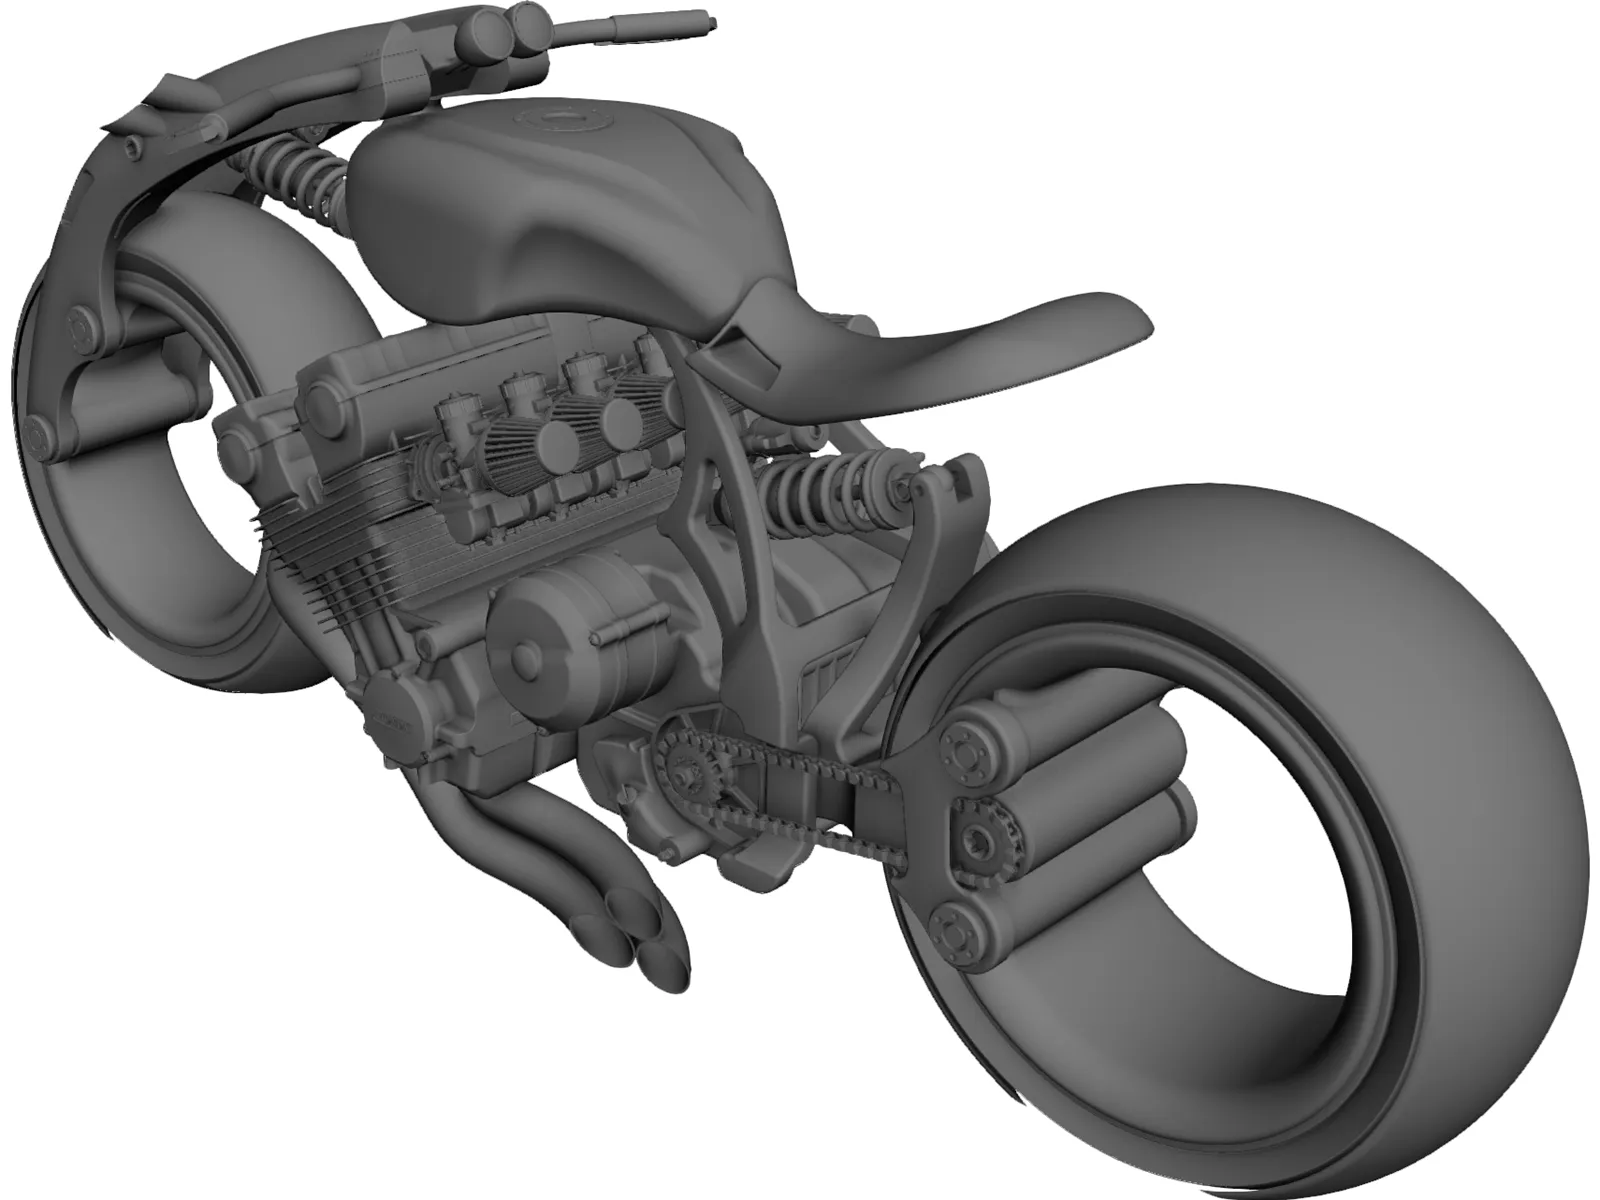 Lo-Rider Motorcycle Concept 3D Model